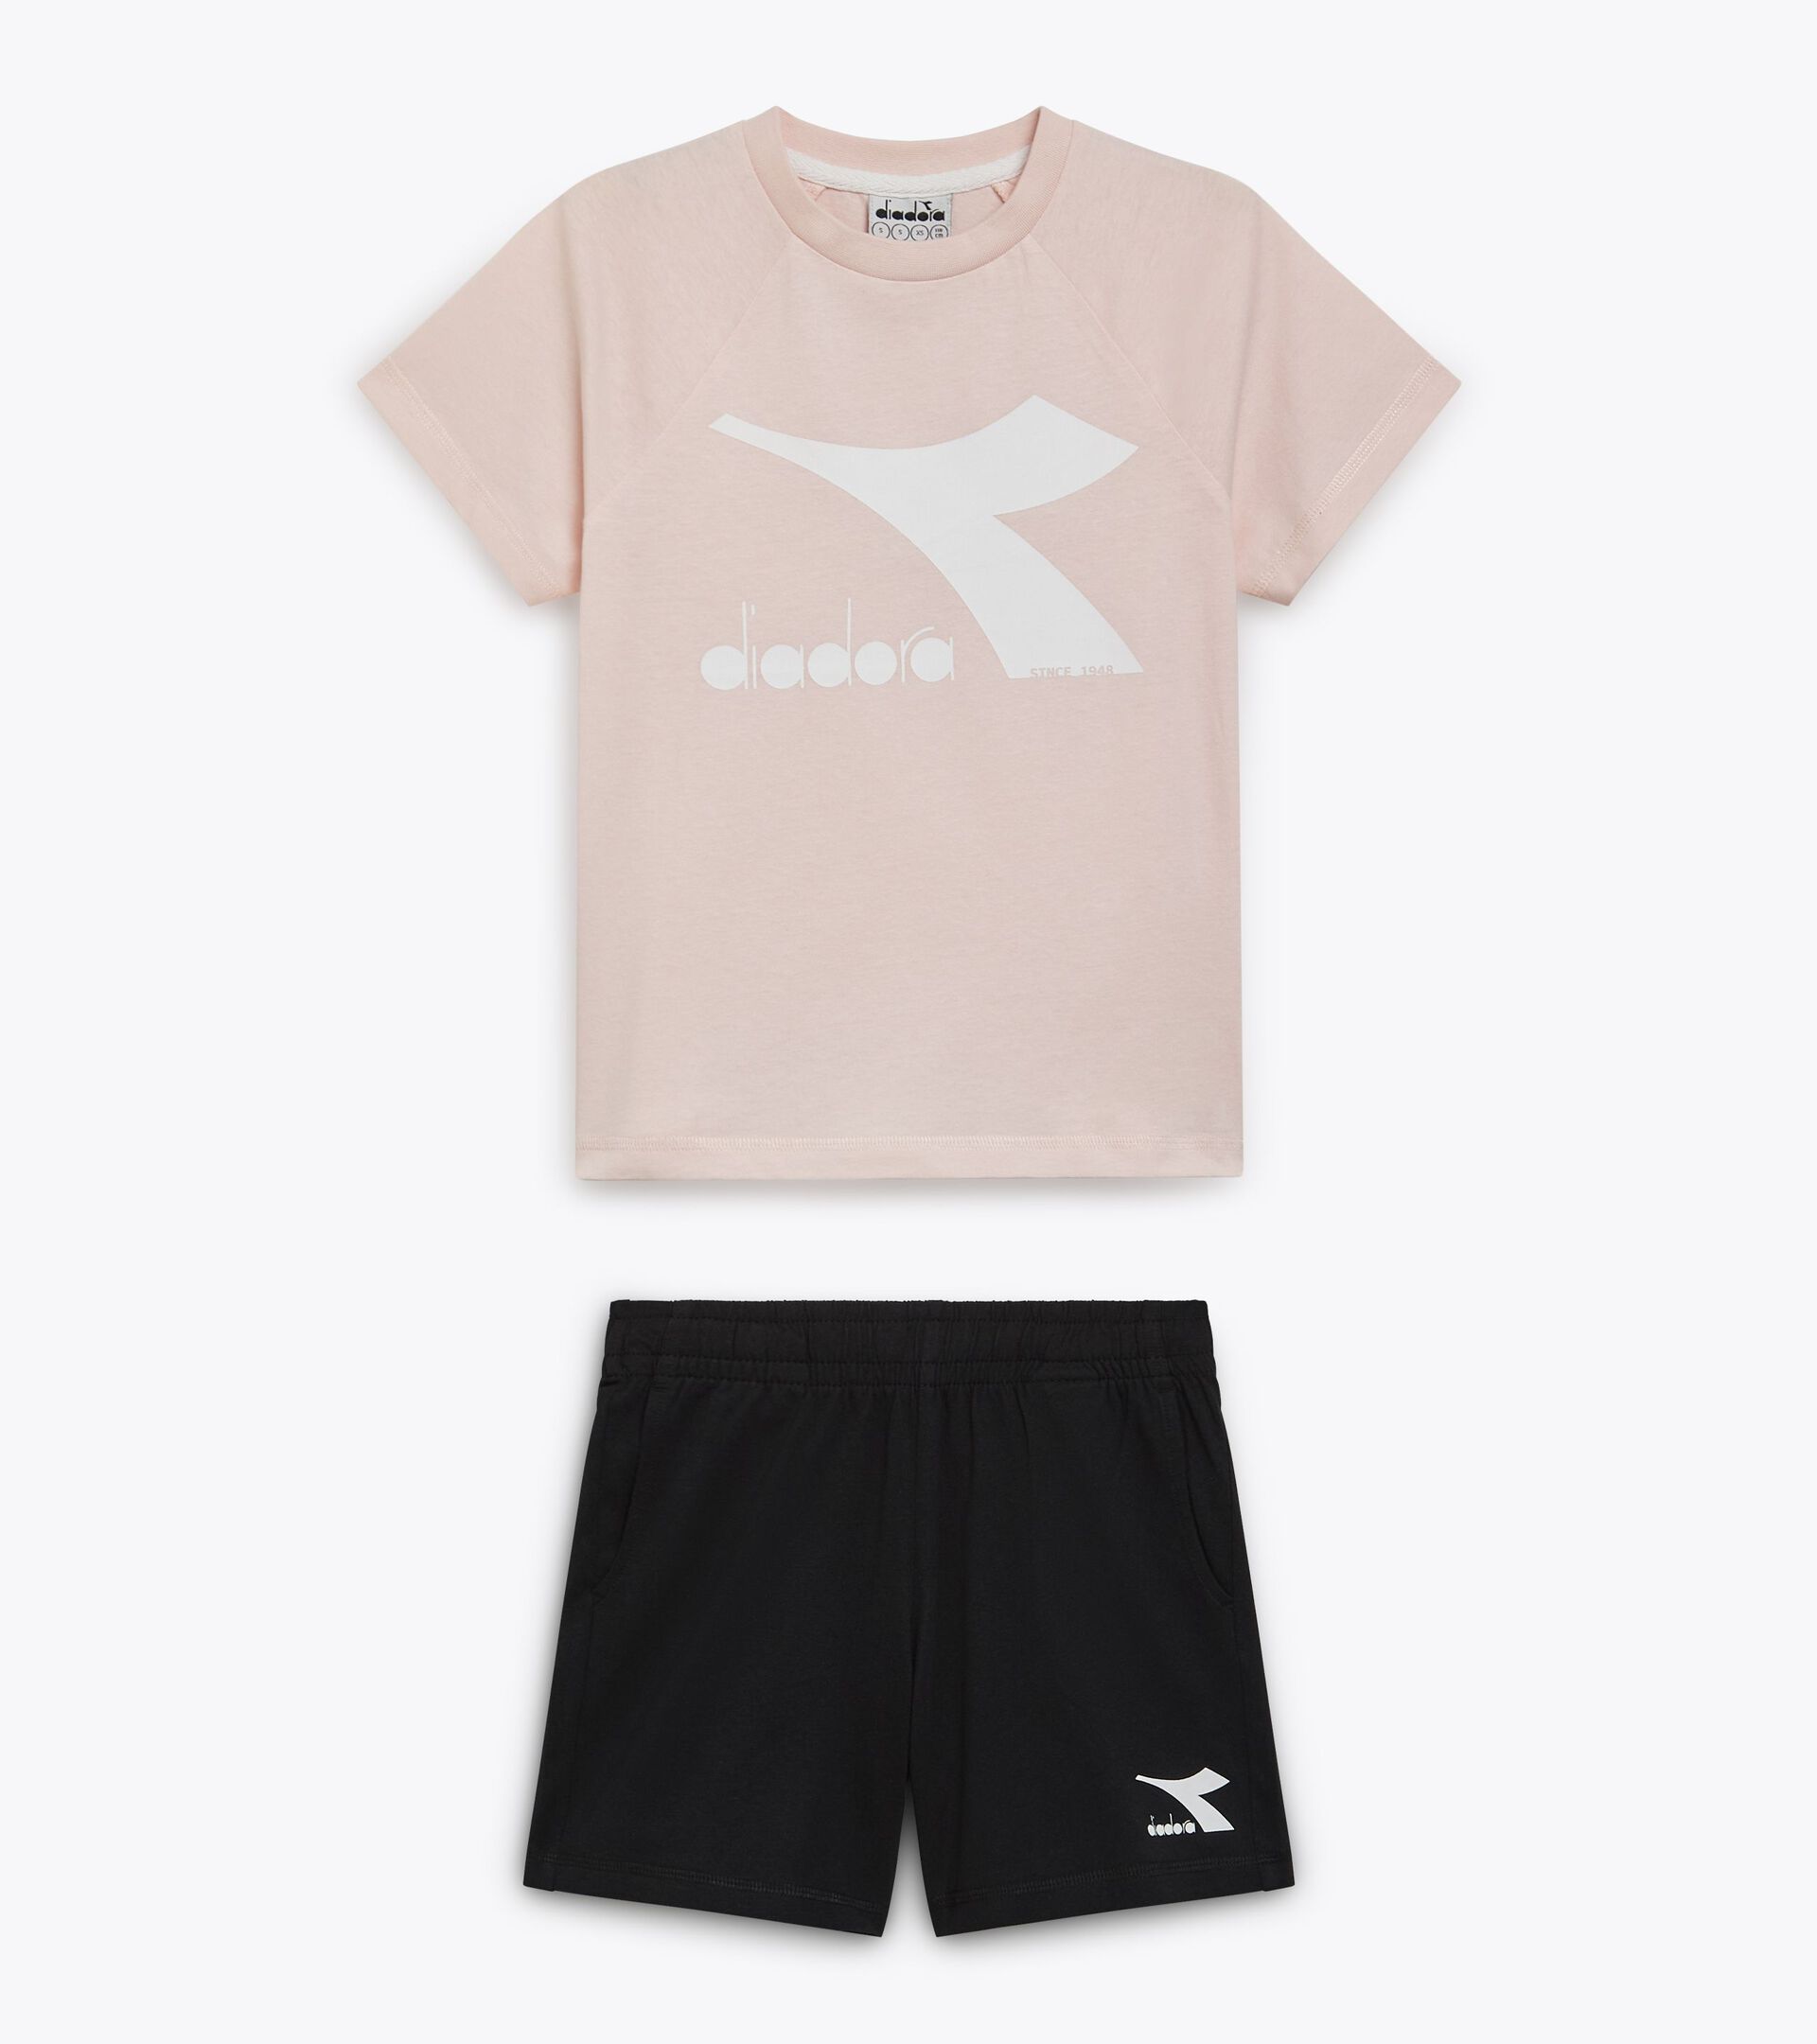 Conjunto deportivo - Camiseta y pantalones cortos - Unisex - Niños/niñas y adolescentes JU. SET SS CORE ROSA CORNEJO - Diadora